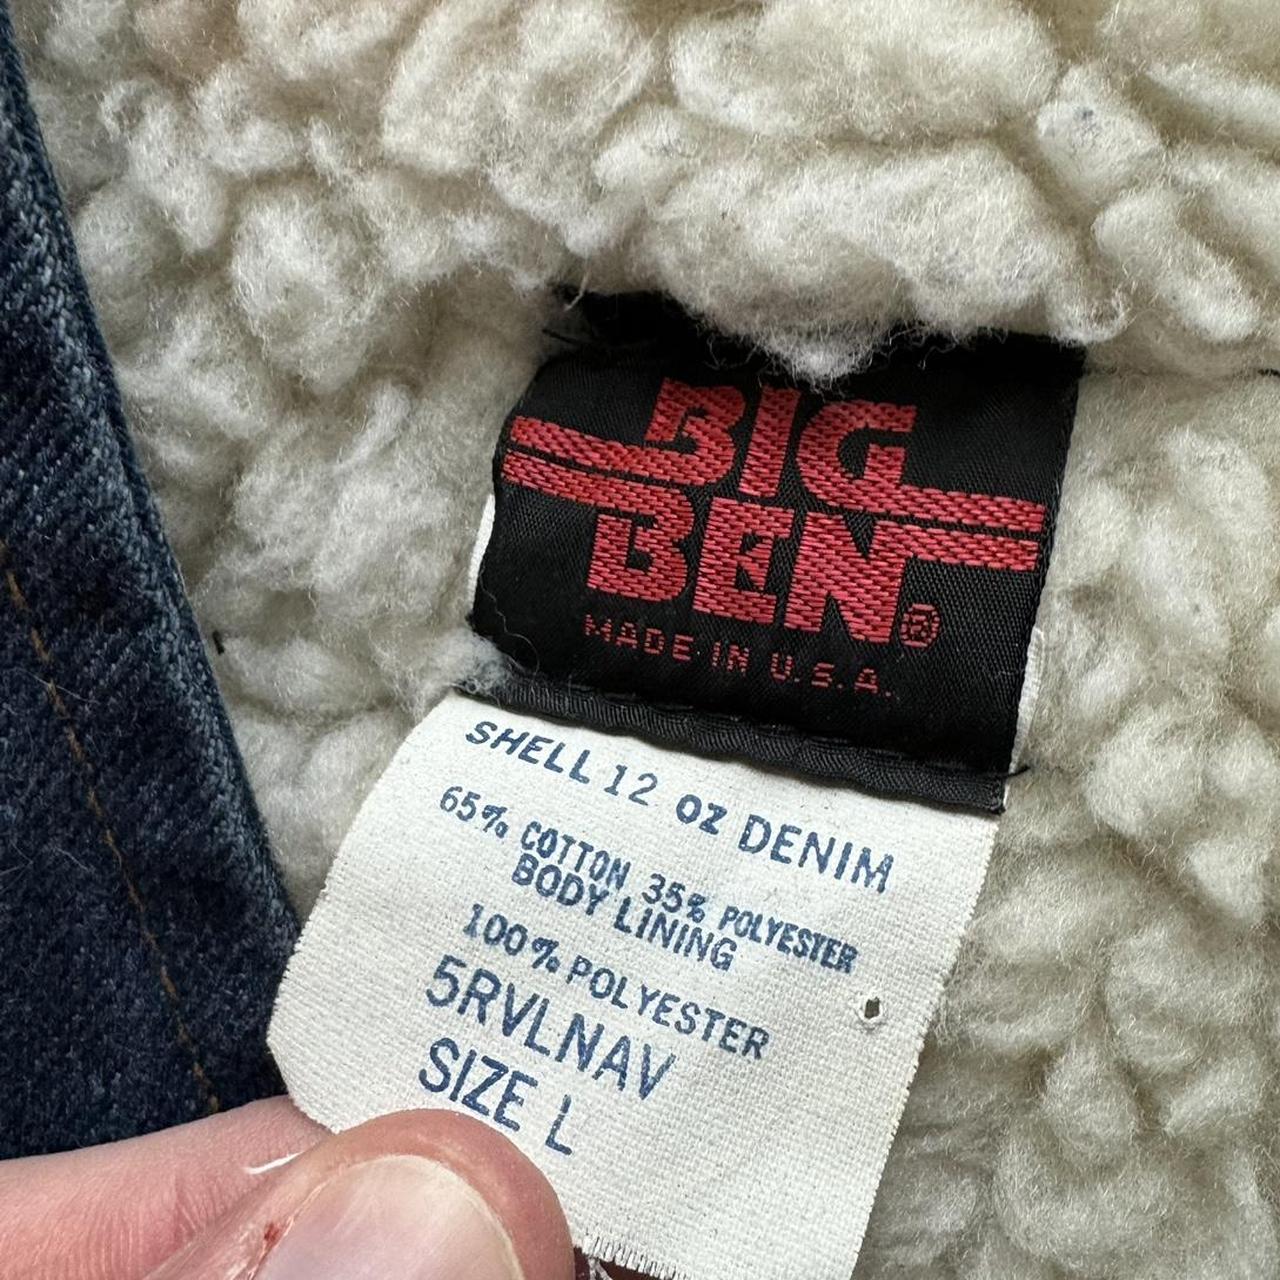 Vintage Big Ben Sherpa Lined Denim Vest Made in USA... - Depop